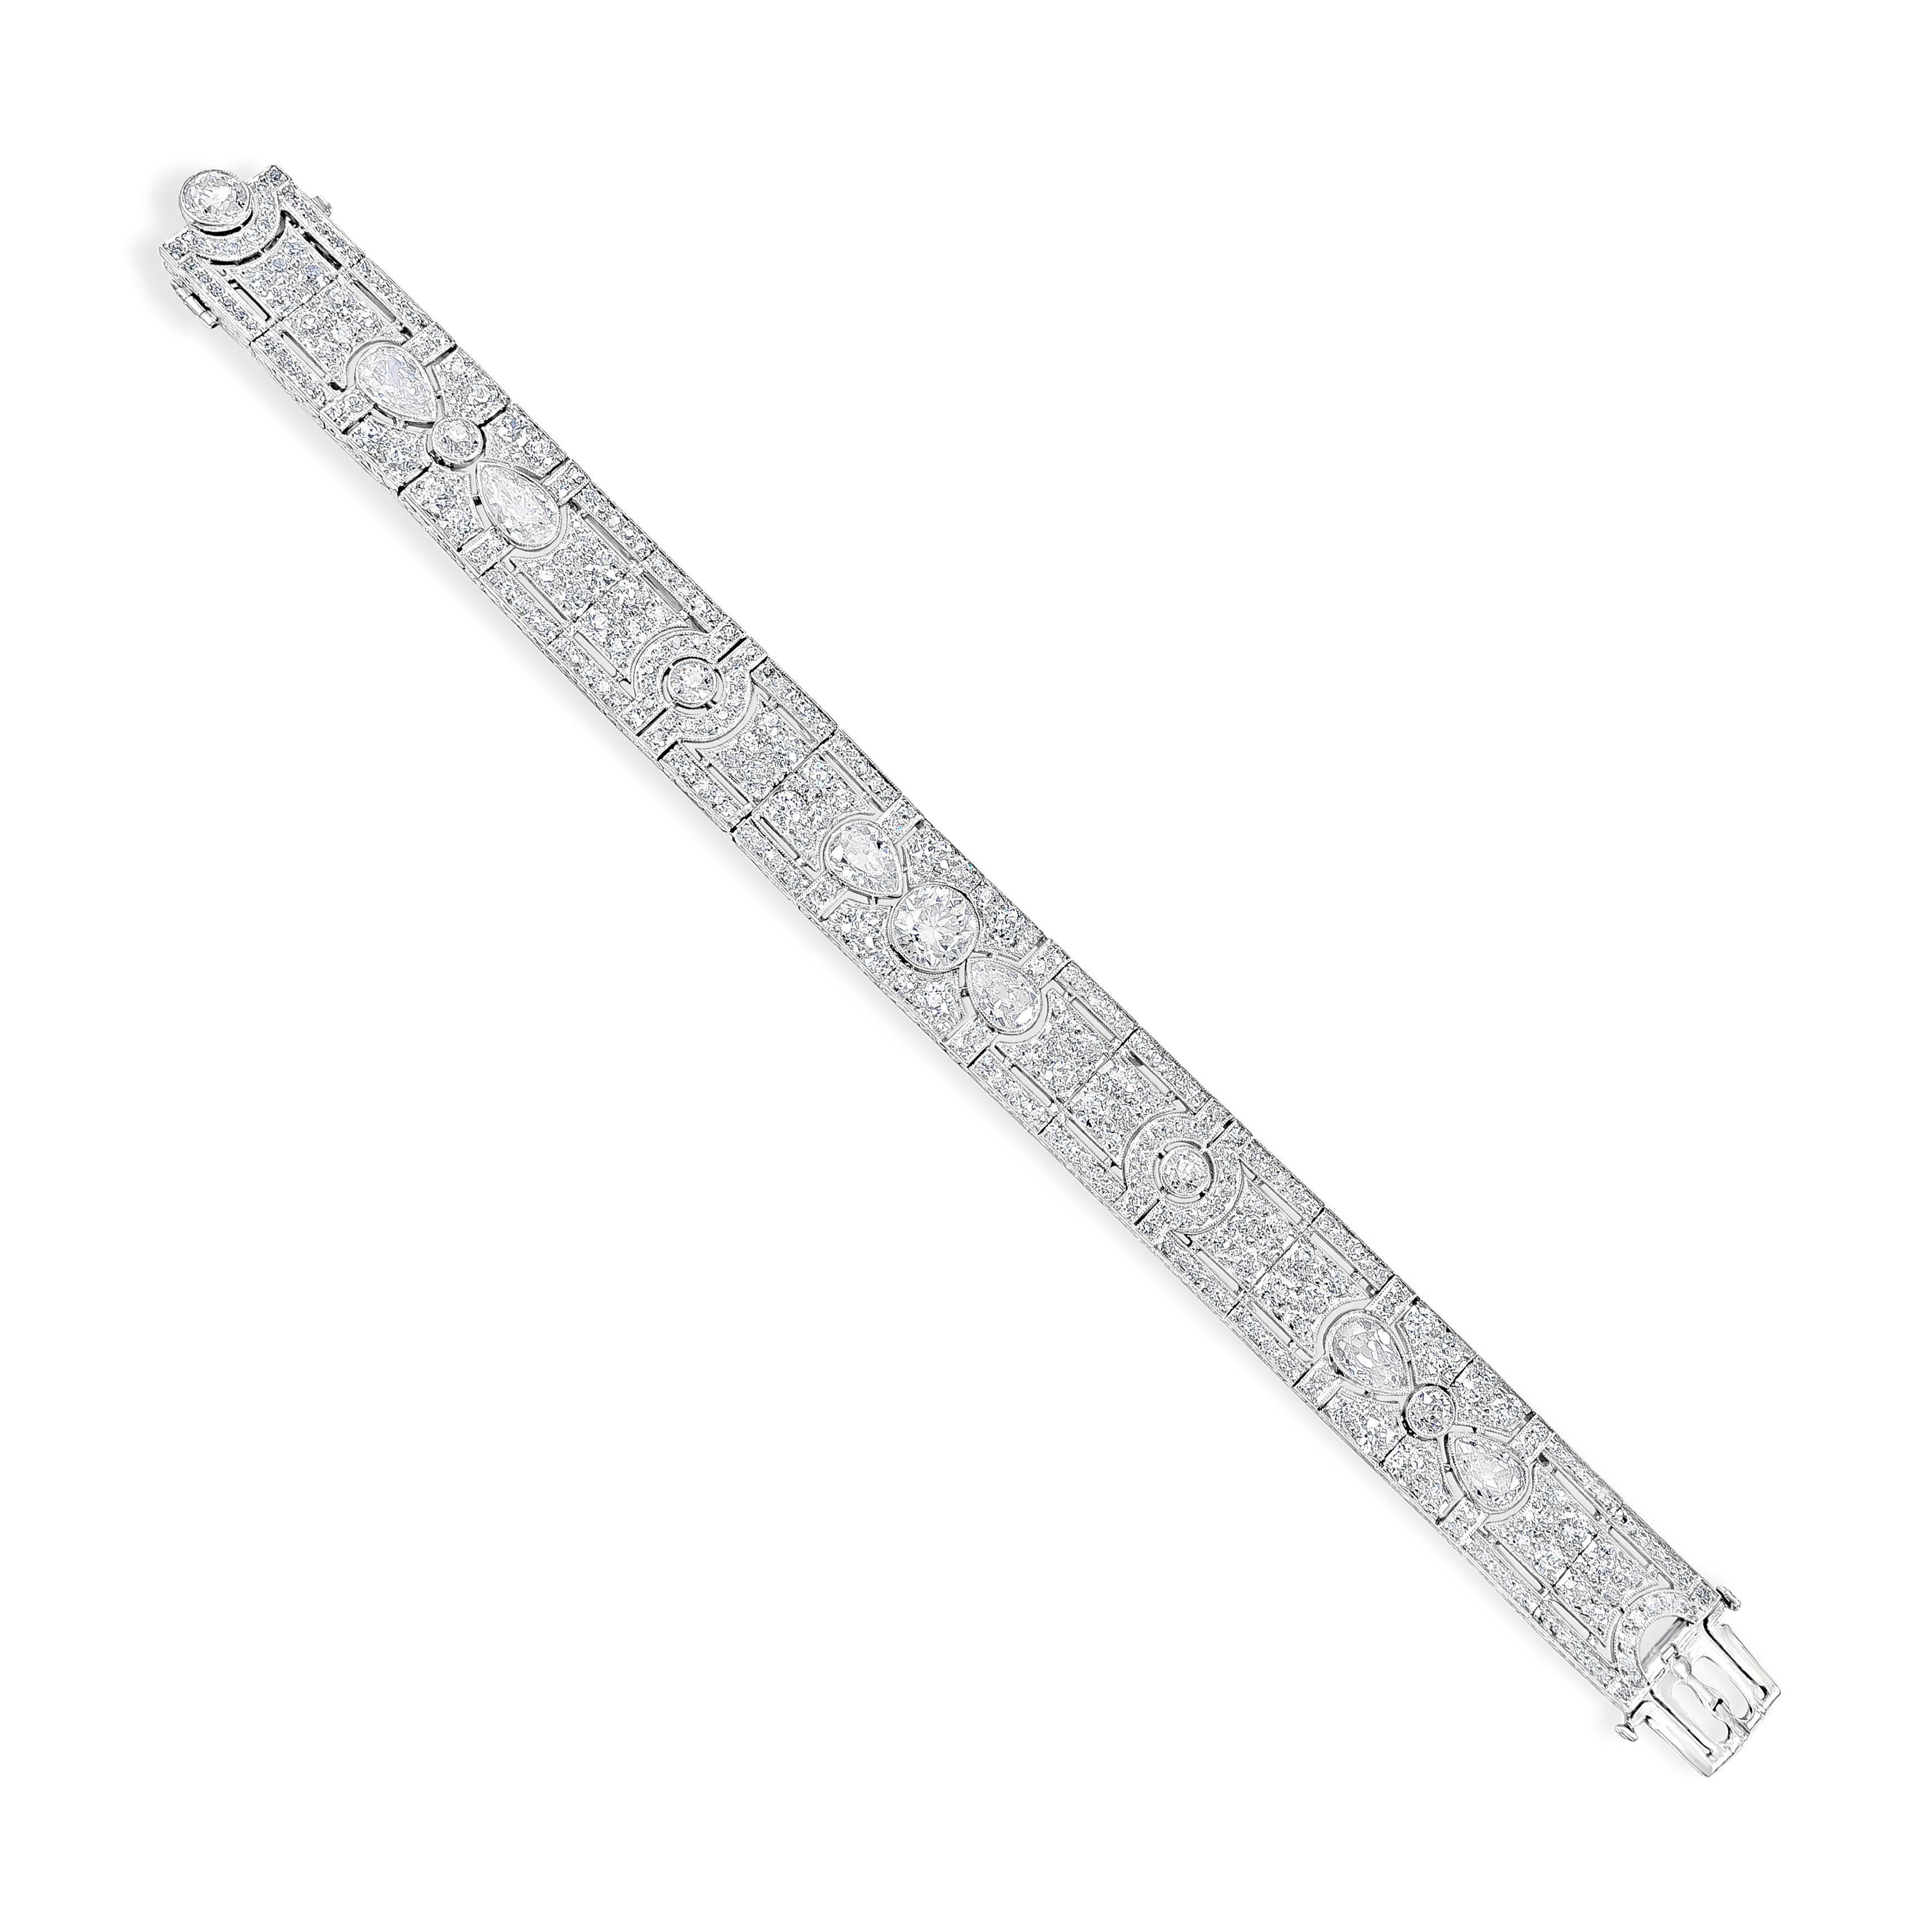 Ein antikes durchbrochenes Art-Deco-Armband, besetzt mit insgesamt 17 Karat Diamanten im Brillant-Mischschliff. Hergestellt aus Platin. 7 Zoll in der Länge.